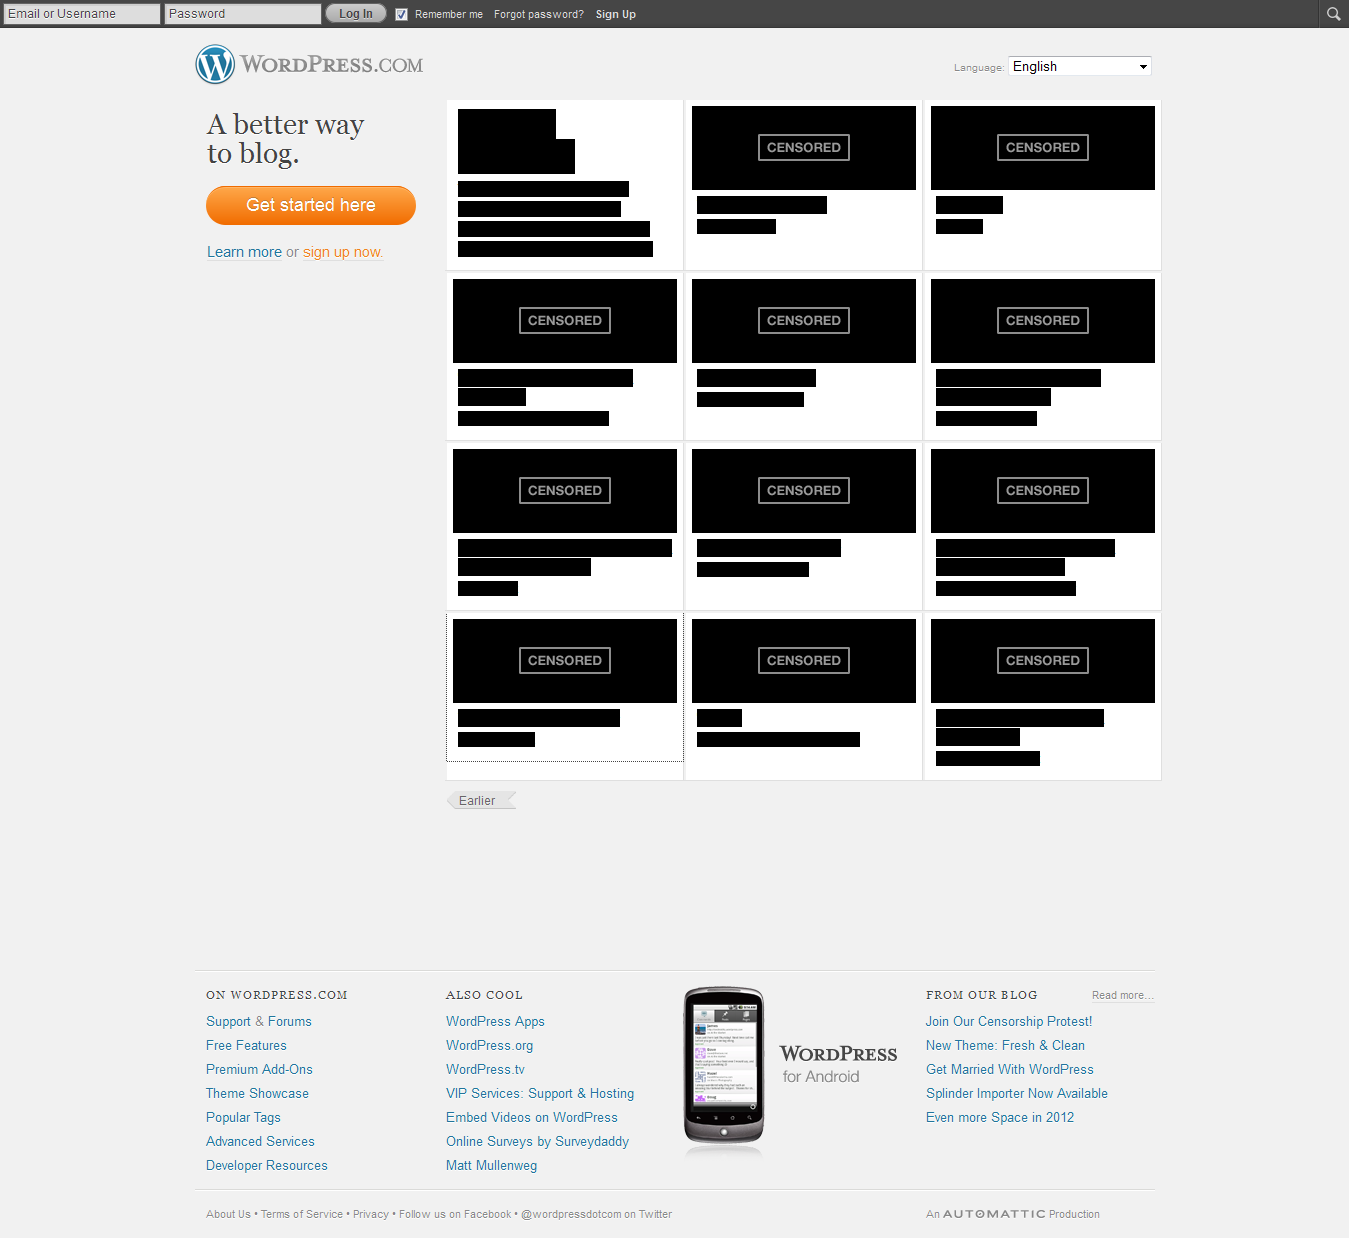 WordPress SOPA Blackout